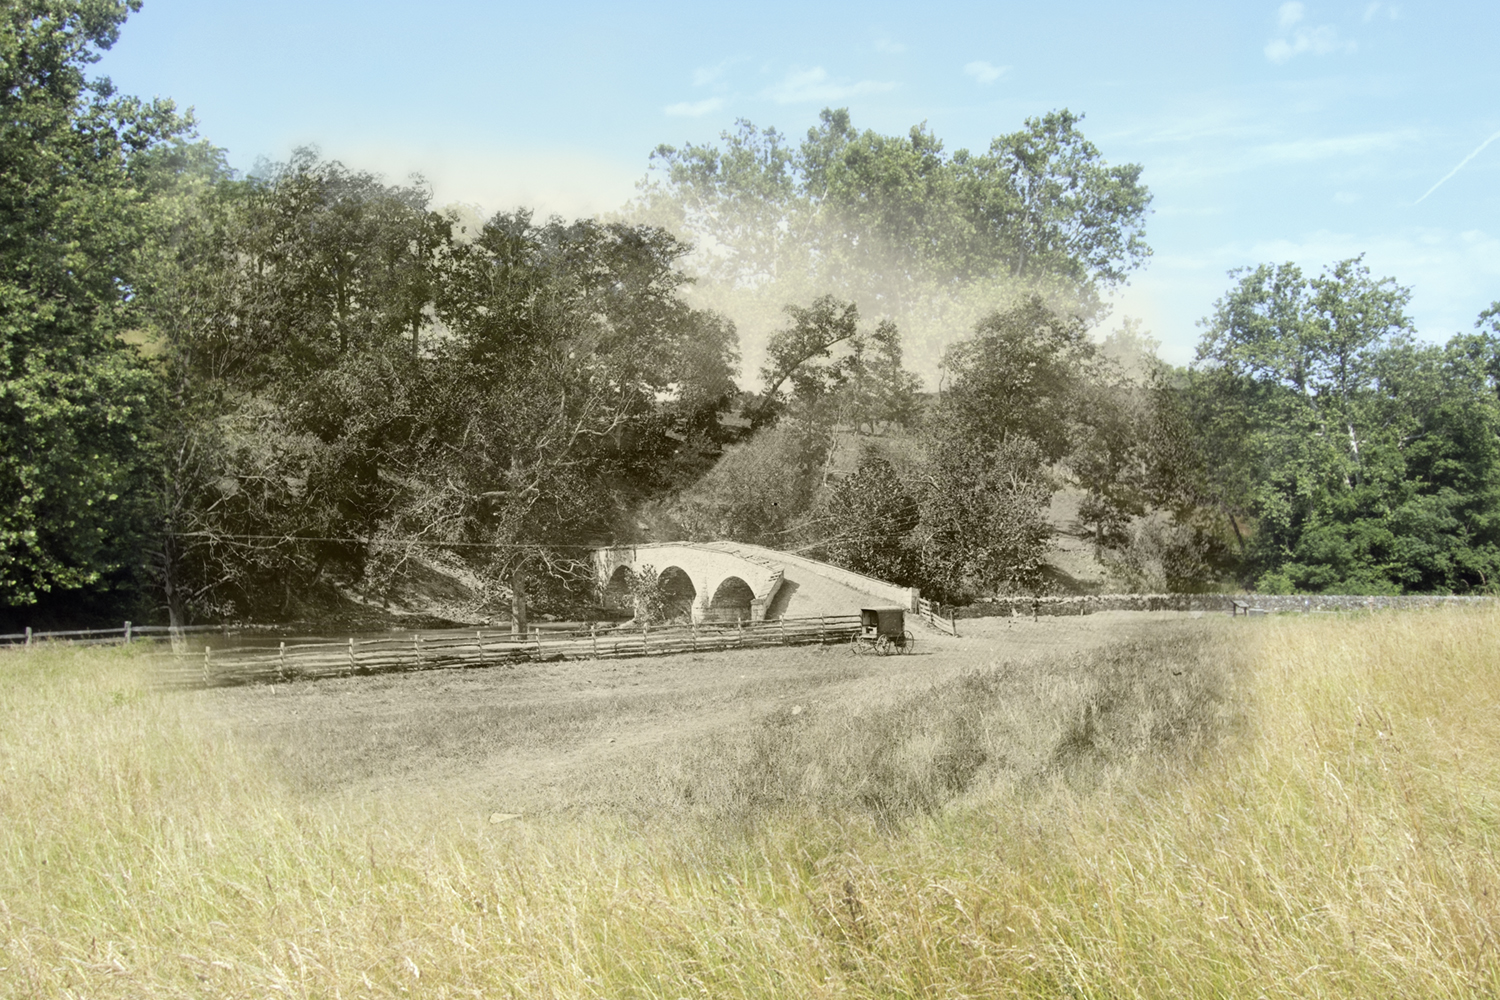  Burnside Bridge Antietam National Battlefield Then and Now 